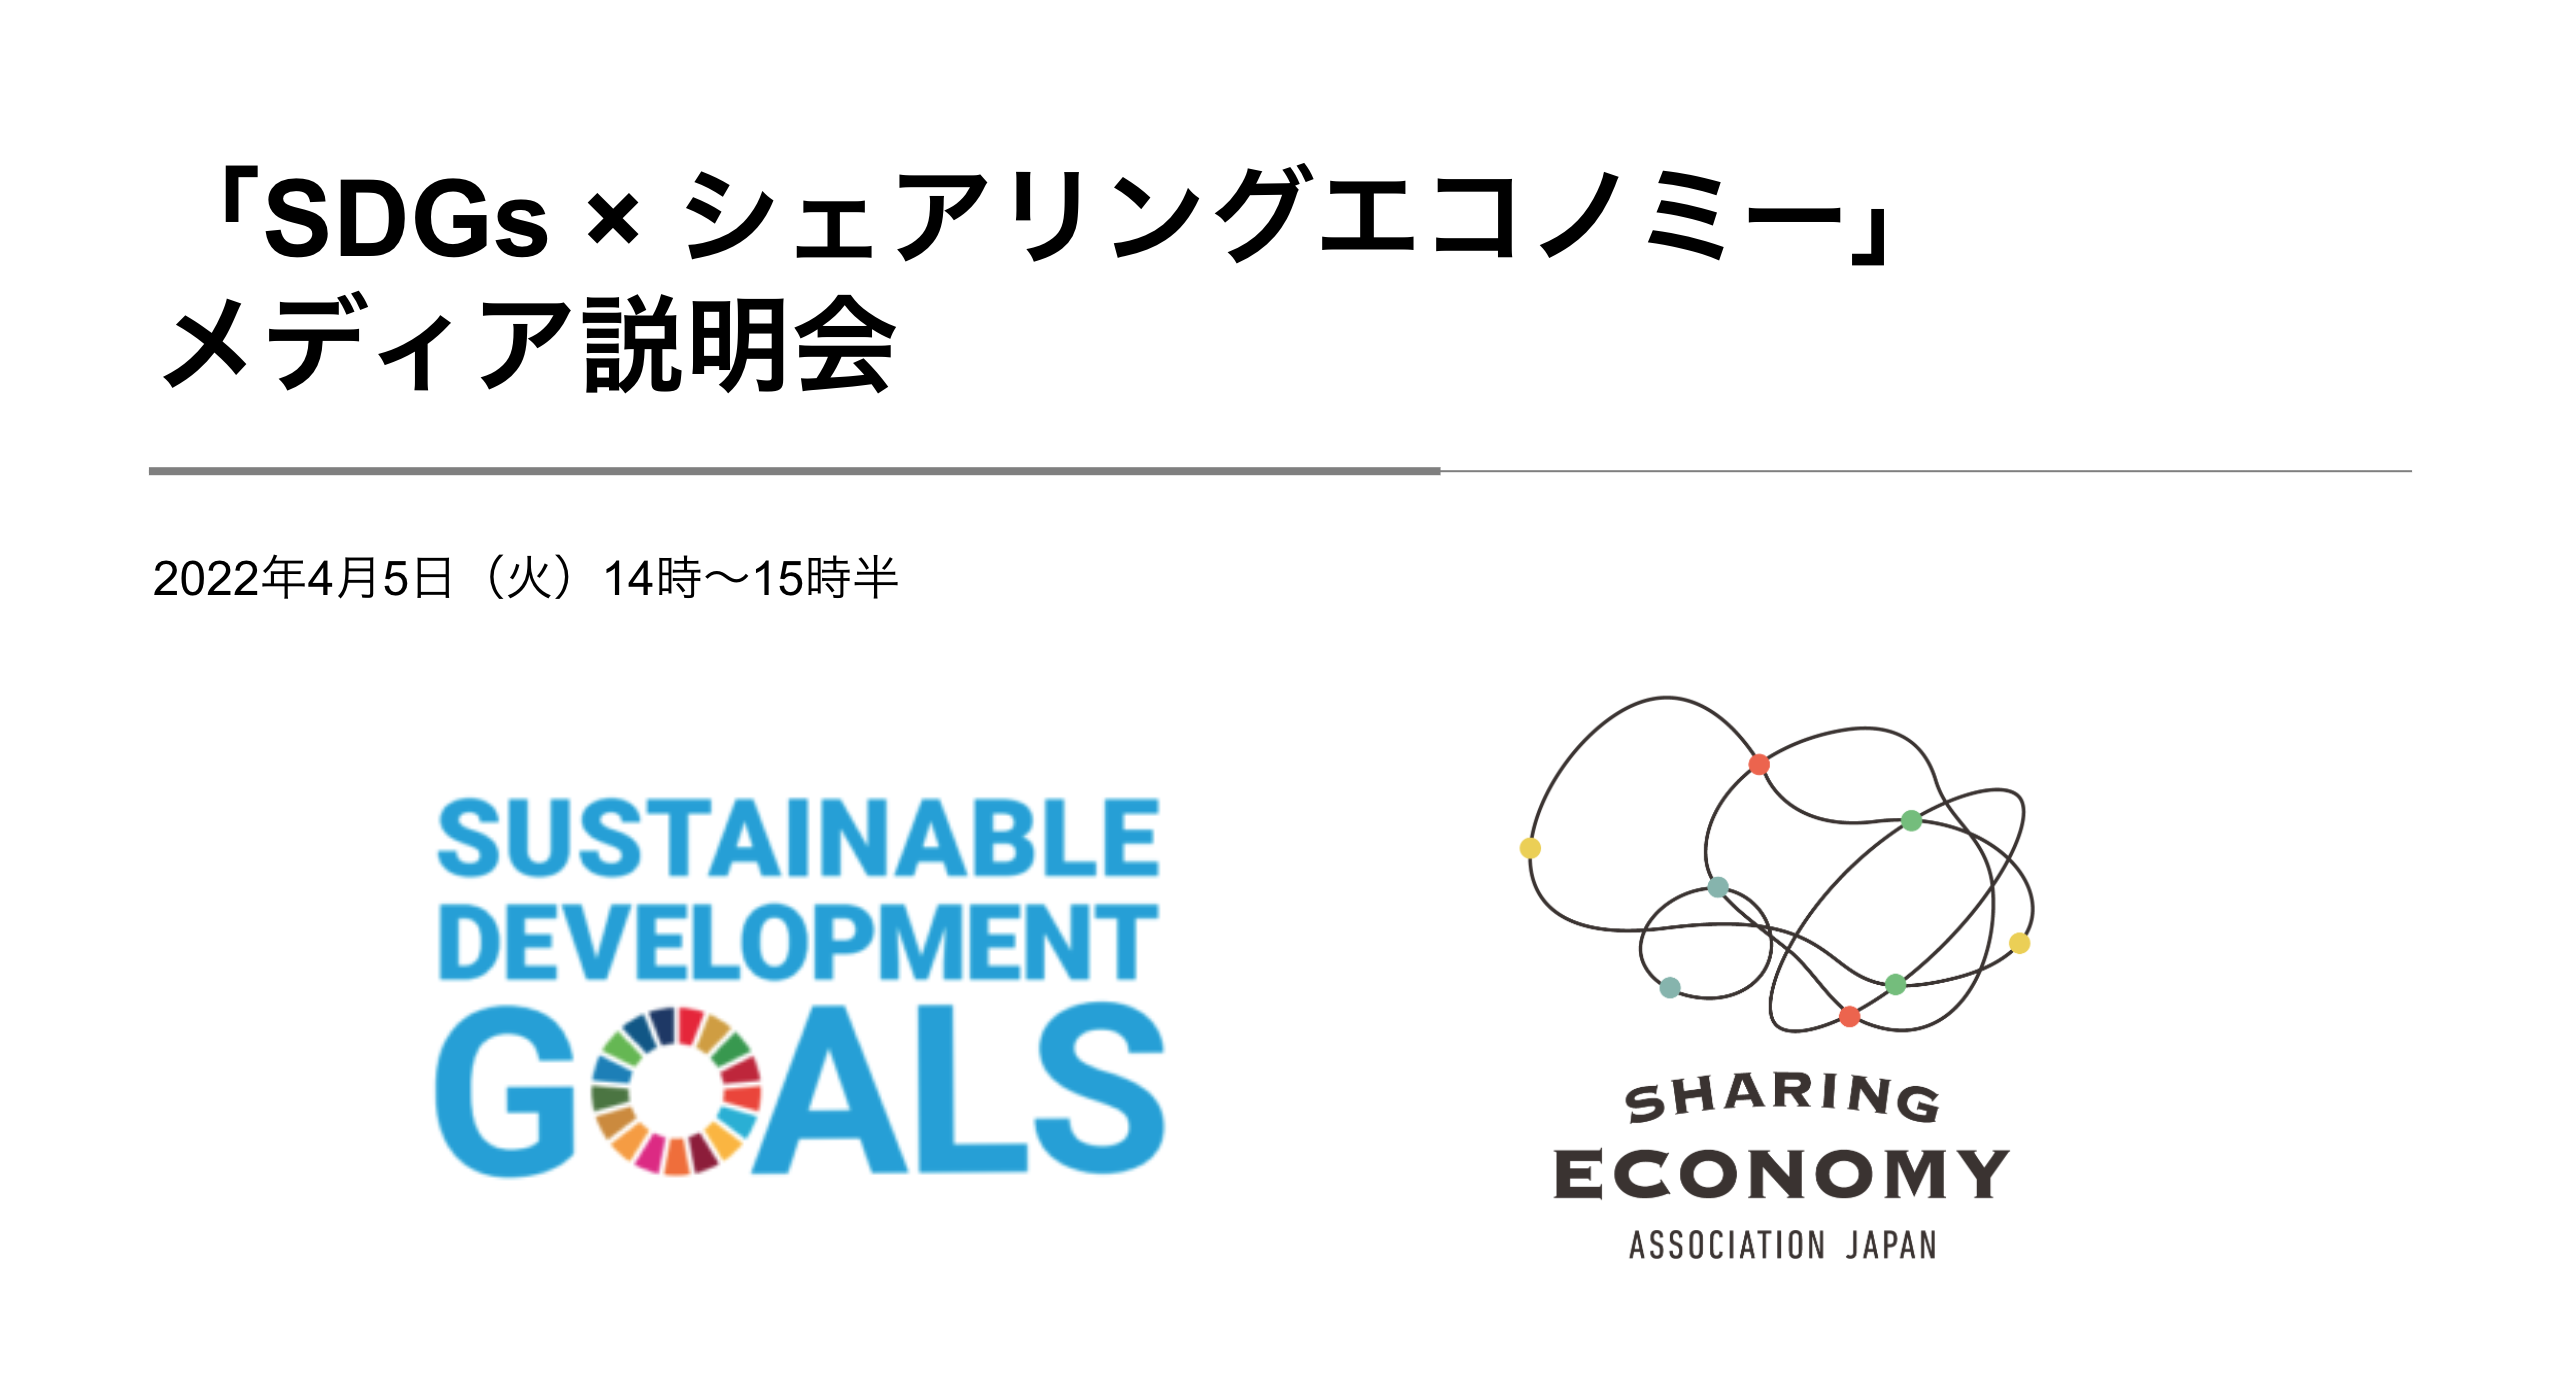 【開催レポート】「SDGs × シェアリングエコノミー」メディア説明会